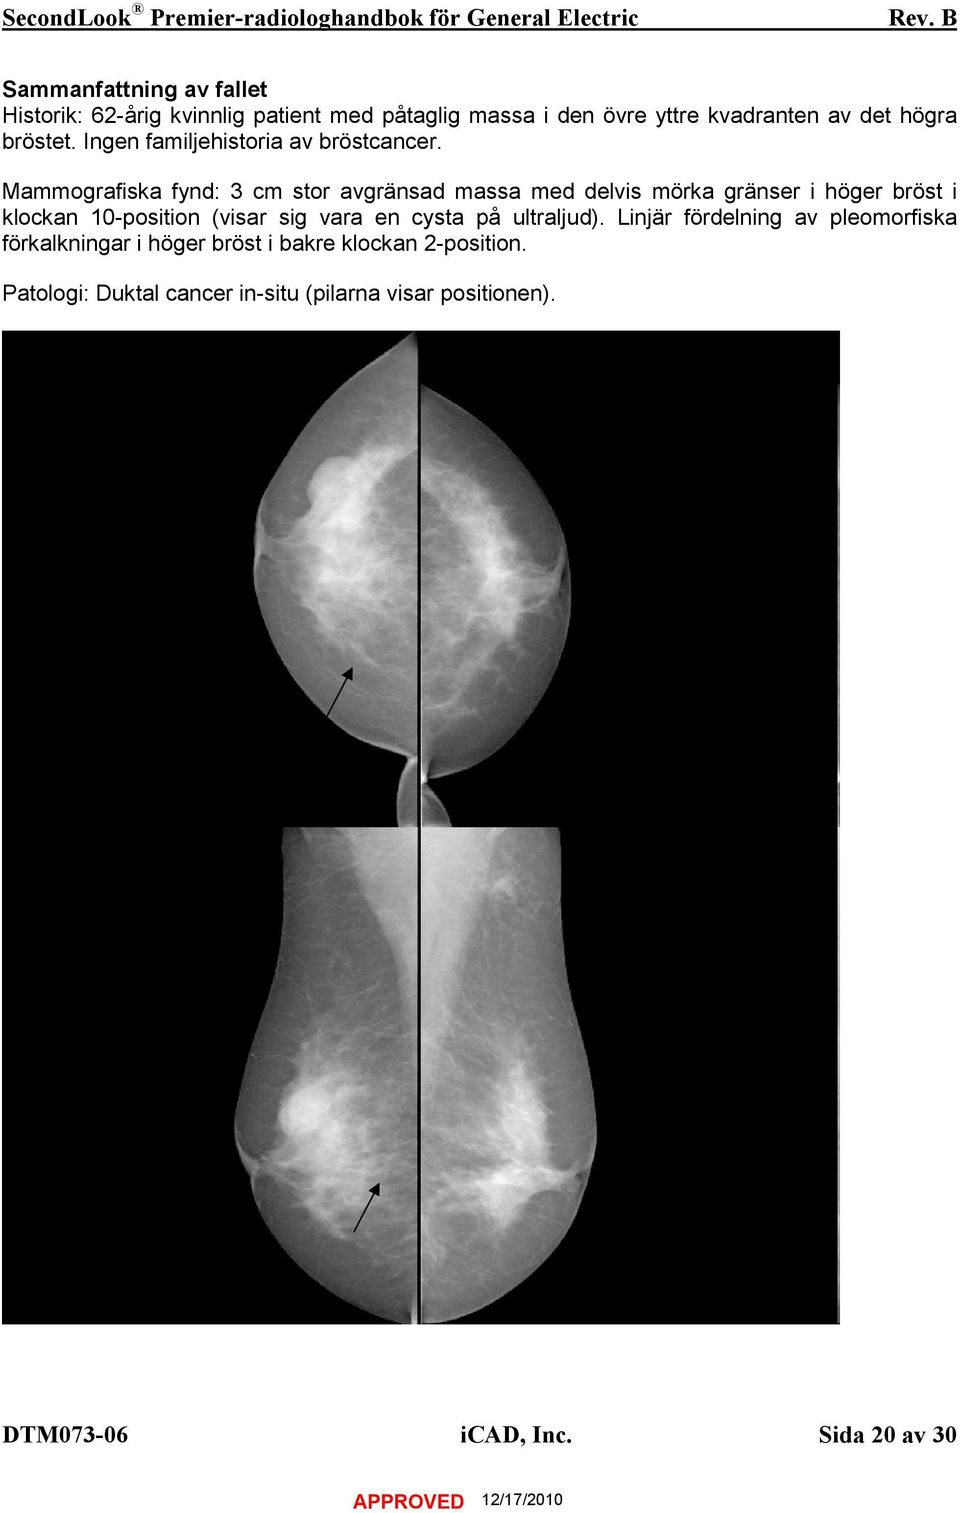 Mammografiska fynd: 3 cm stor avgränsad massa med delvis mörka gränser i höger bröst i klockan 10-position (visar sig vara